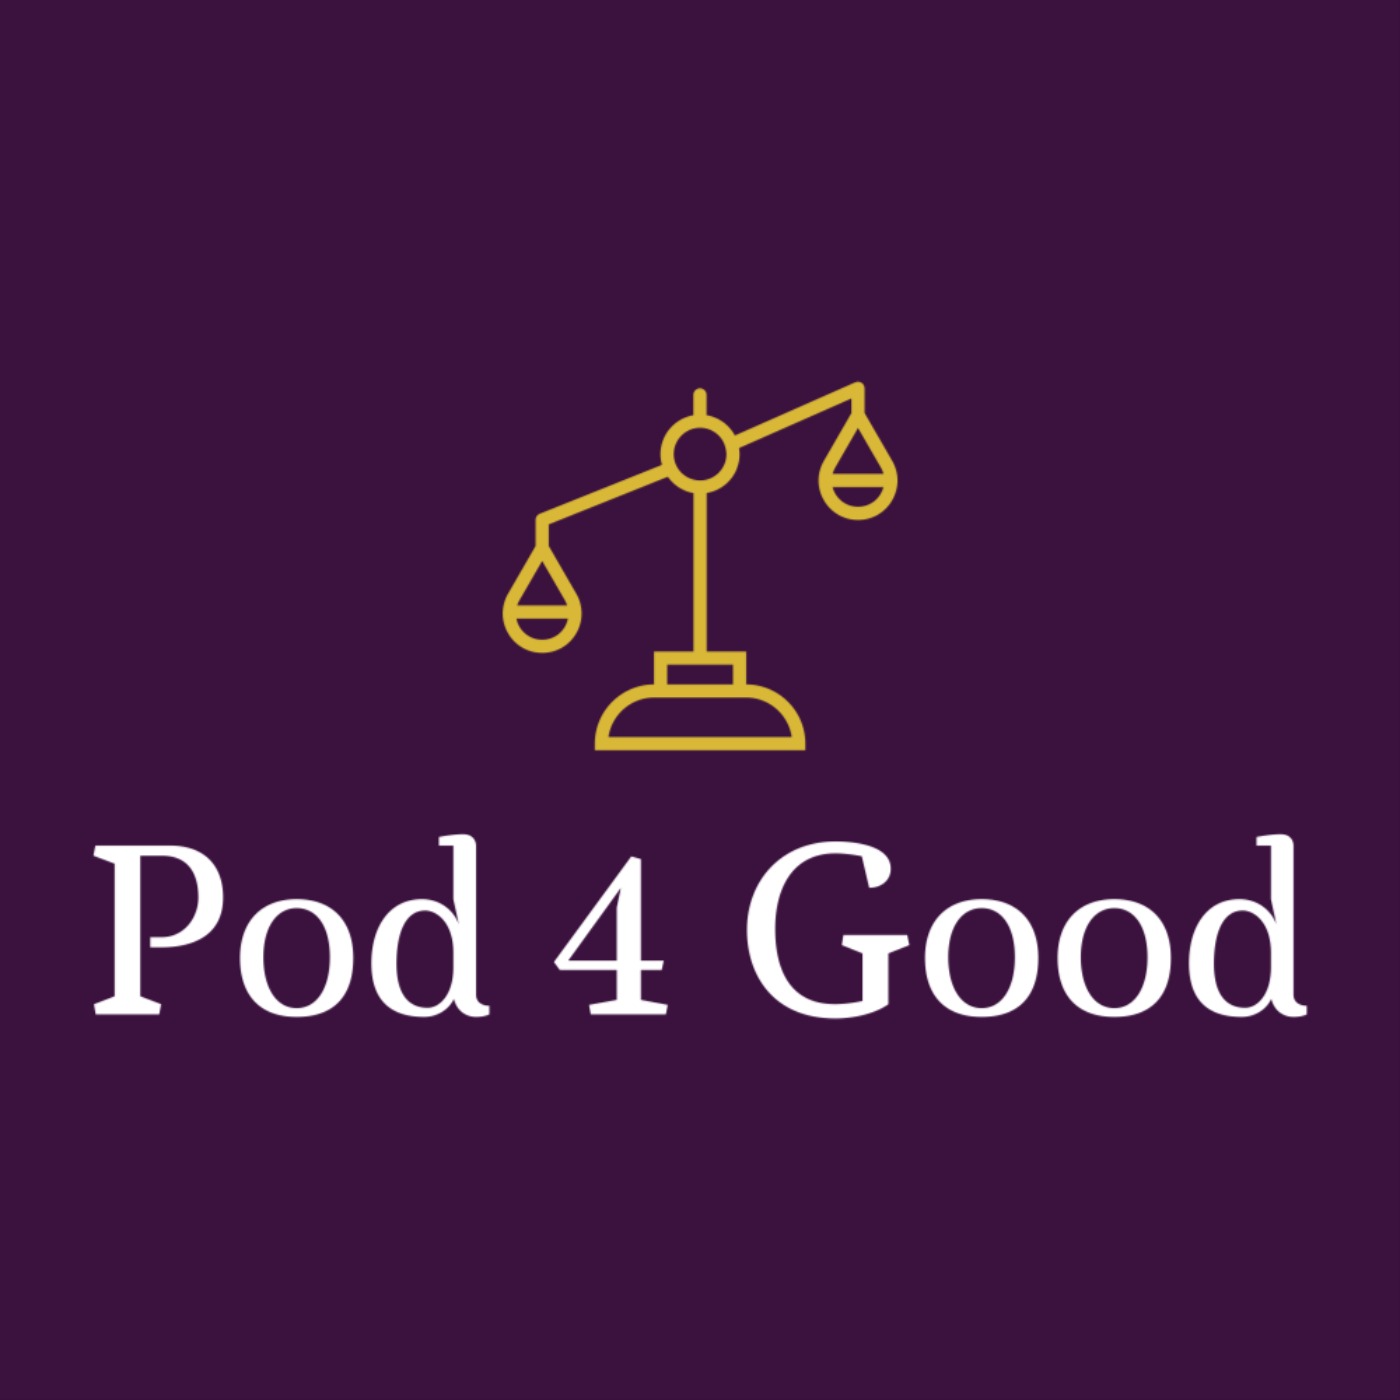 Artwork for podcast Pod 4 Good